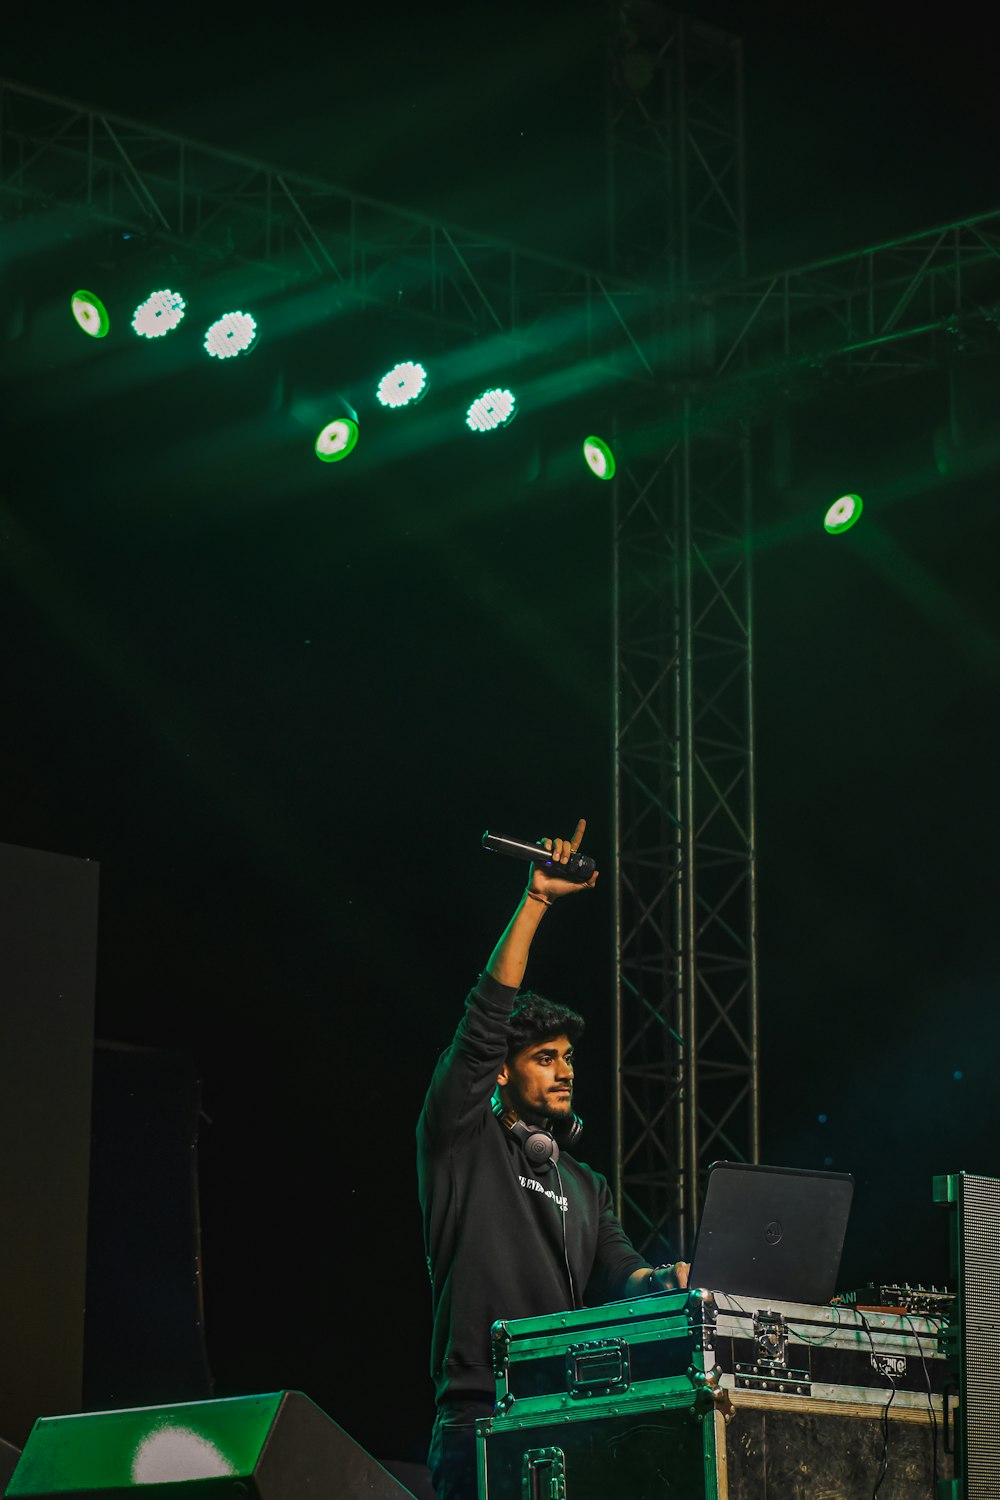 Un uomo in piedi su un palco con in mano un microfono